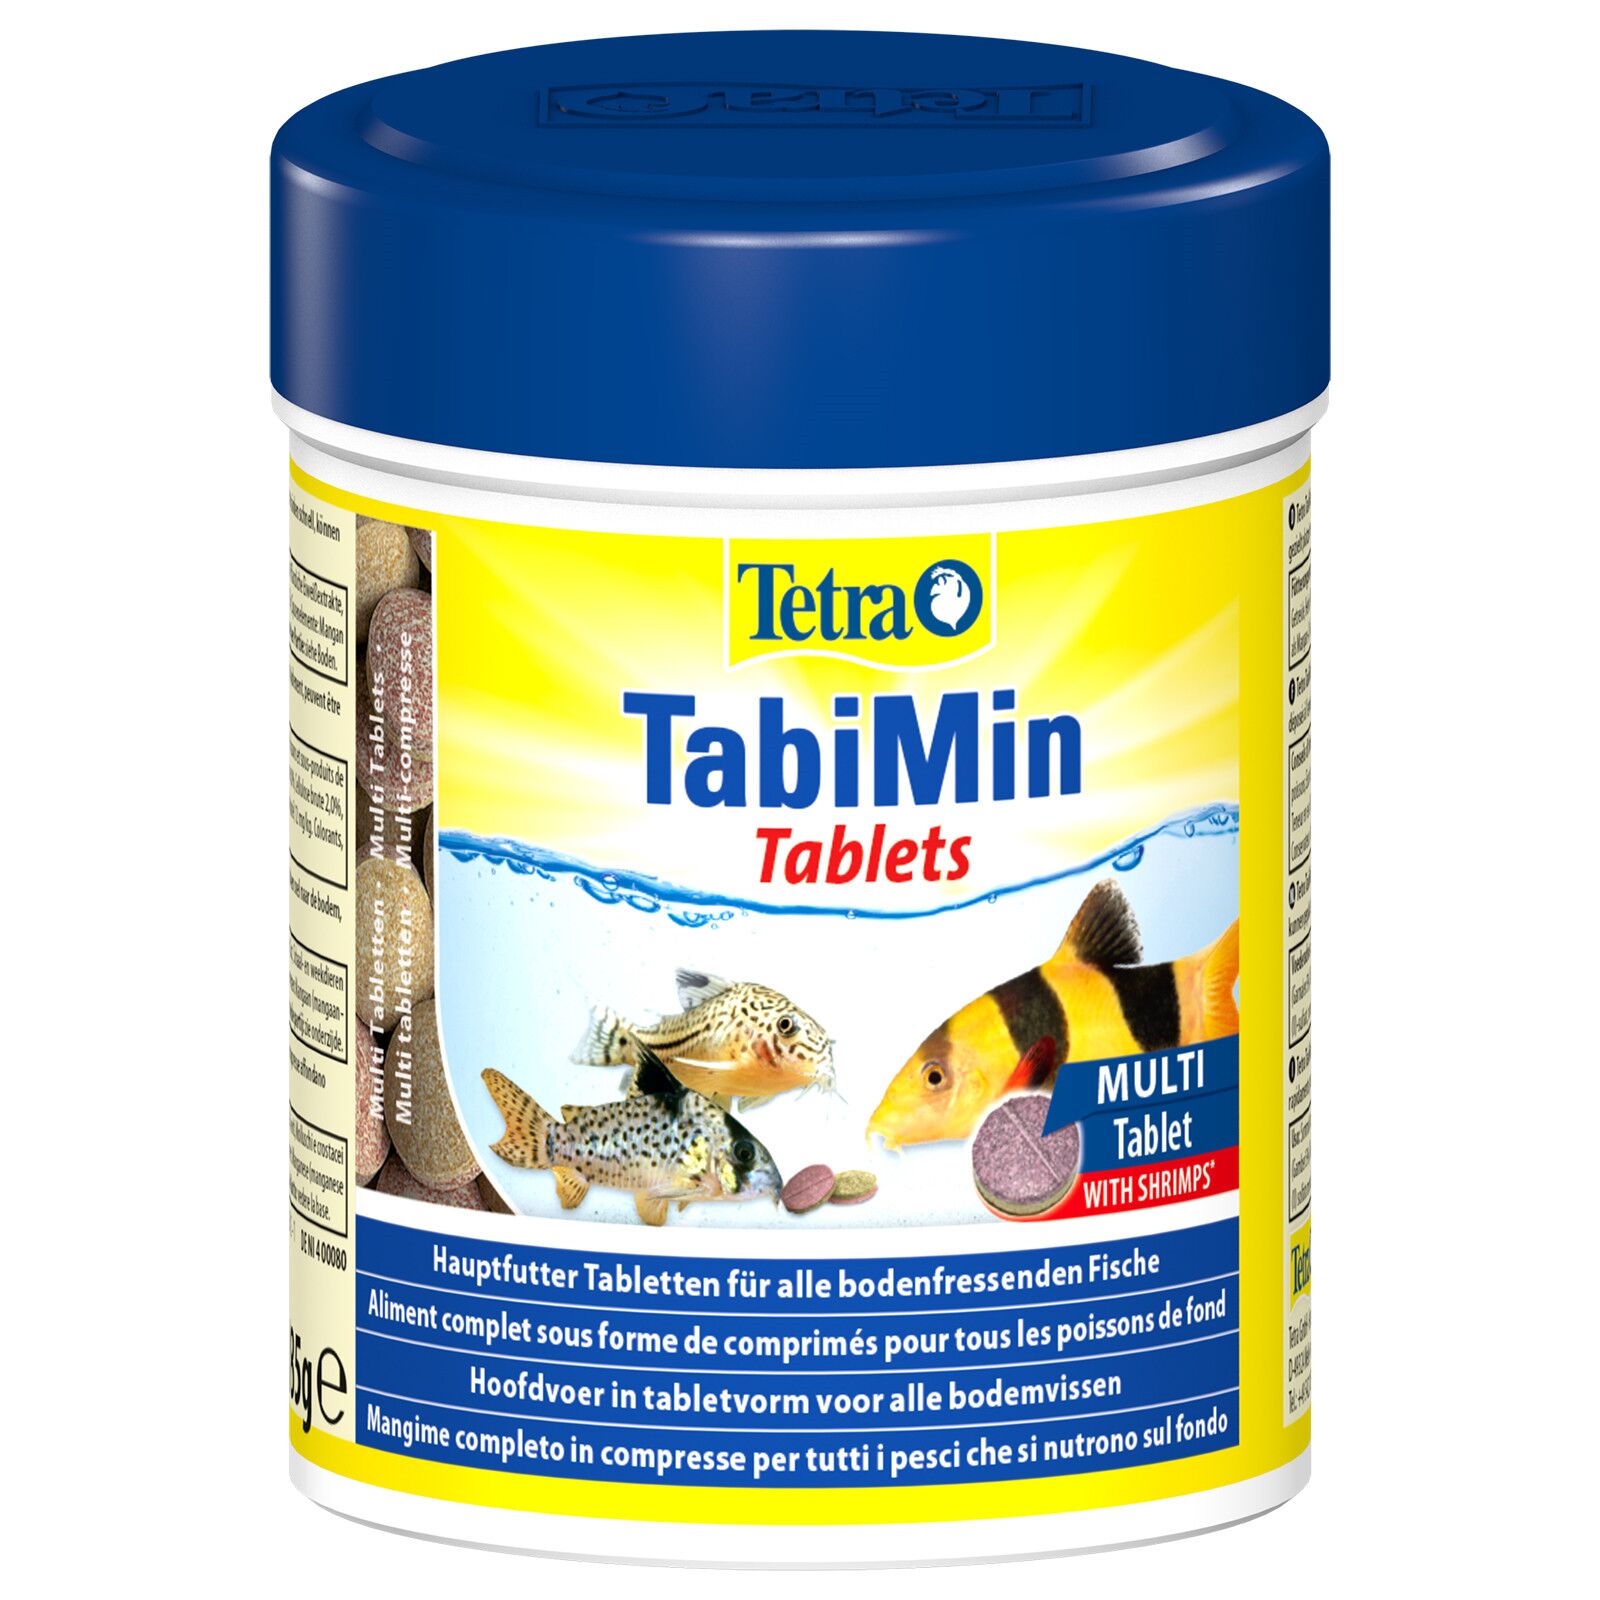 Pokarmy Tetra Tablets TabiMin 58tab.